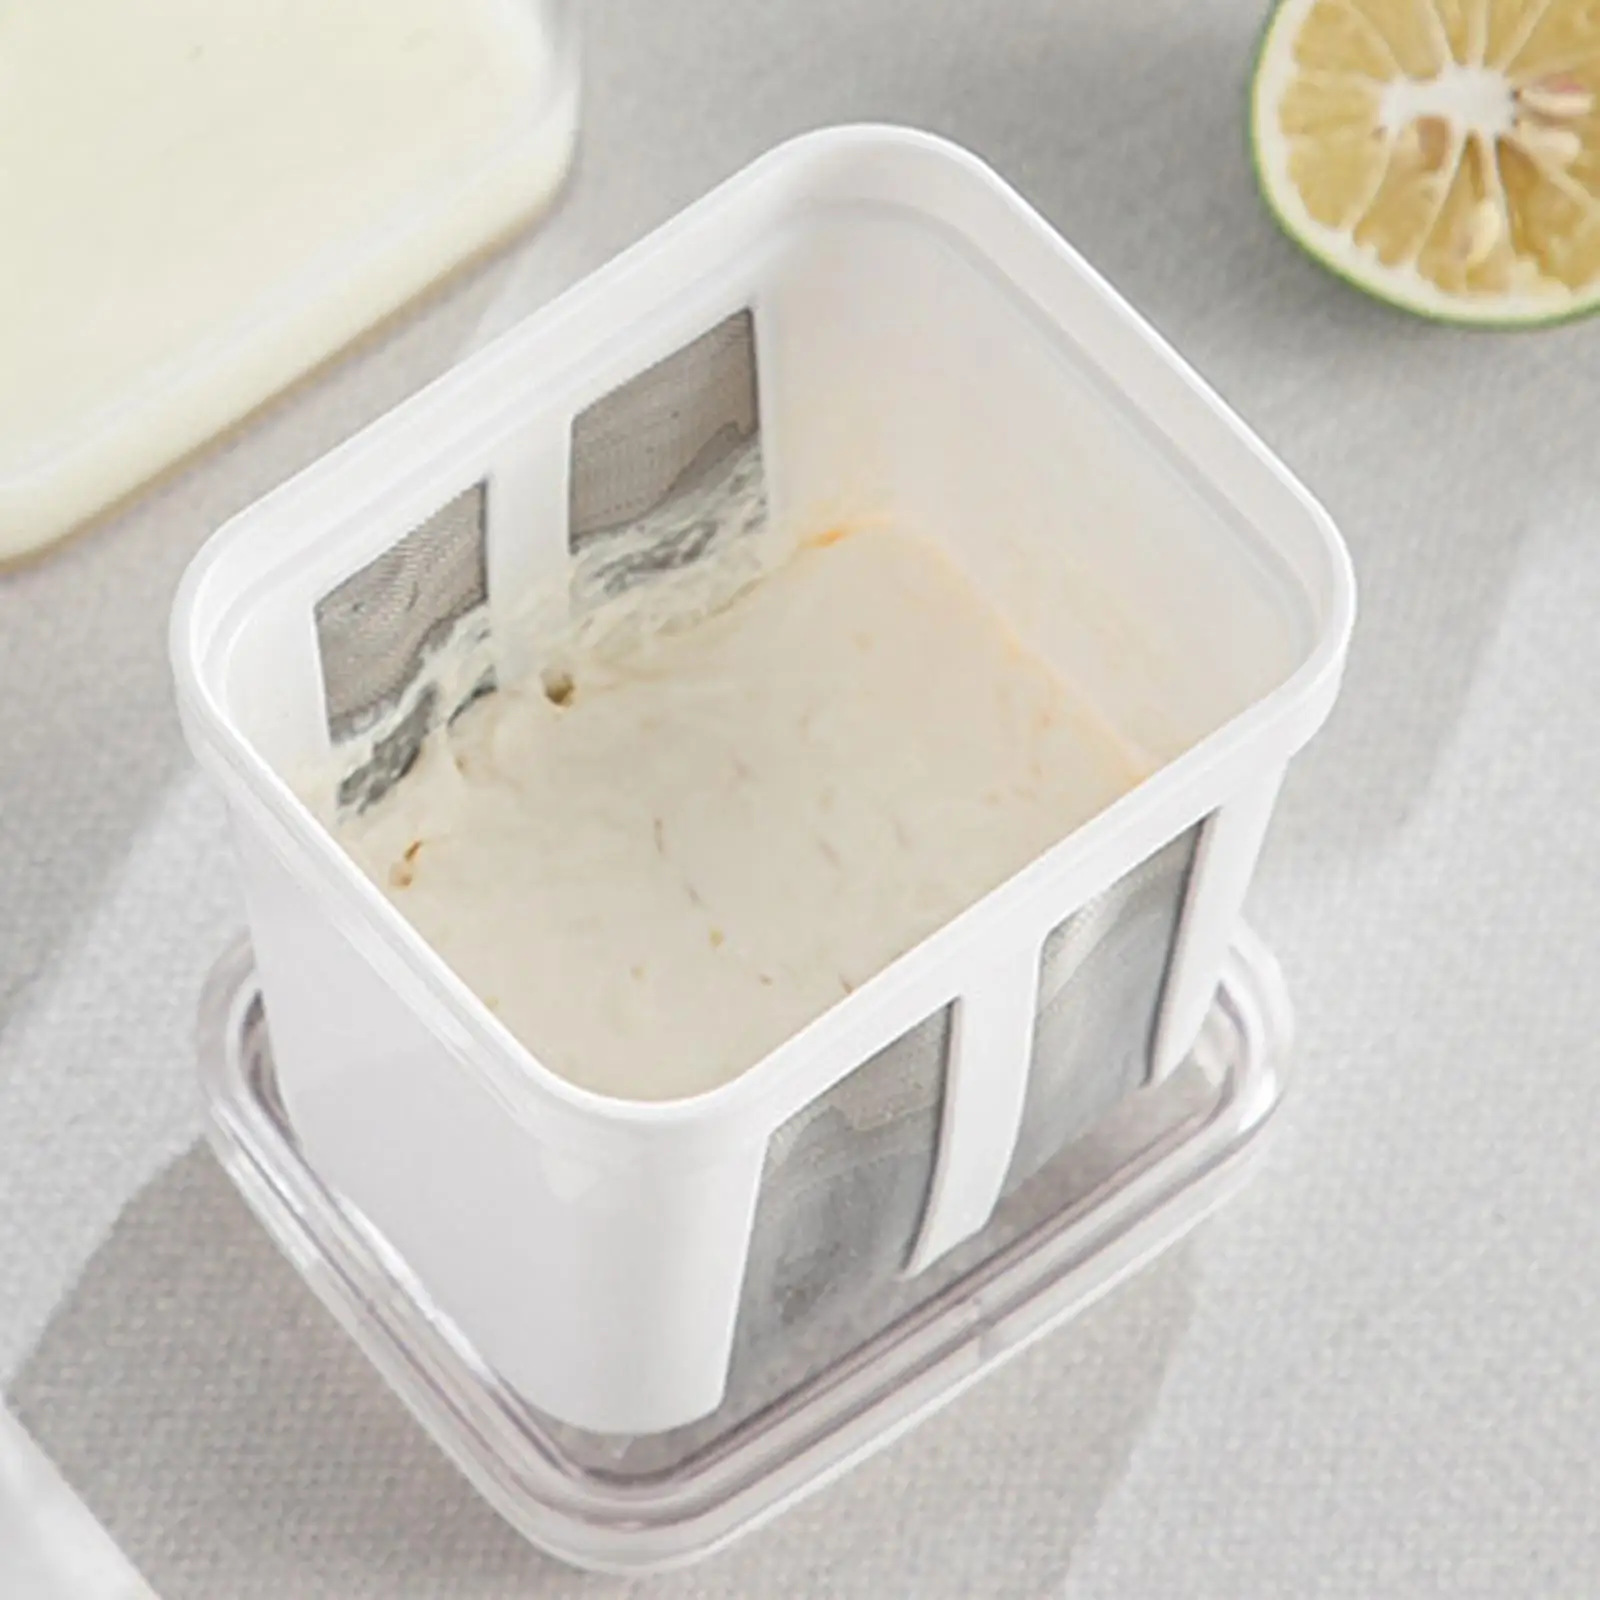 Greek Yogurt Strainer Mesh Household Whey Separator for Tea Soy Milk Picnic